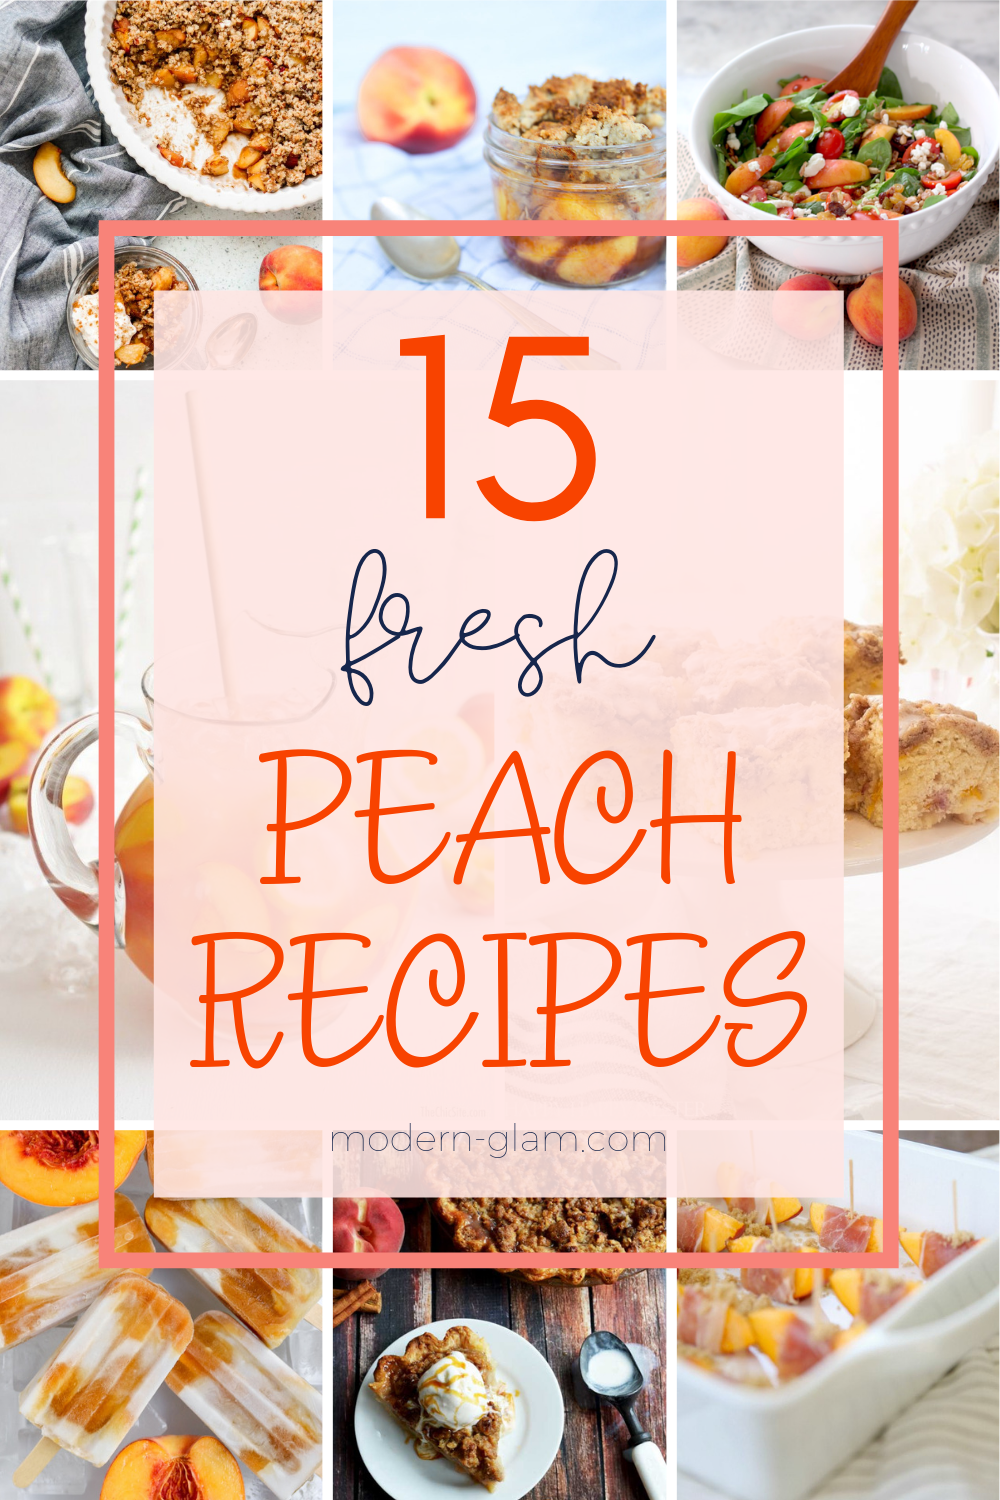 fresh peach recipes for summer